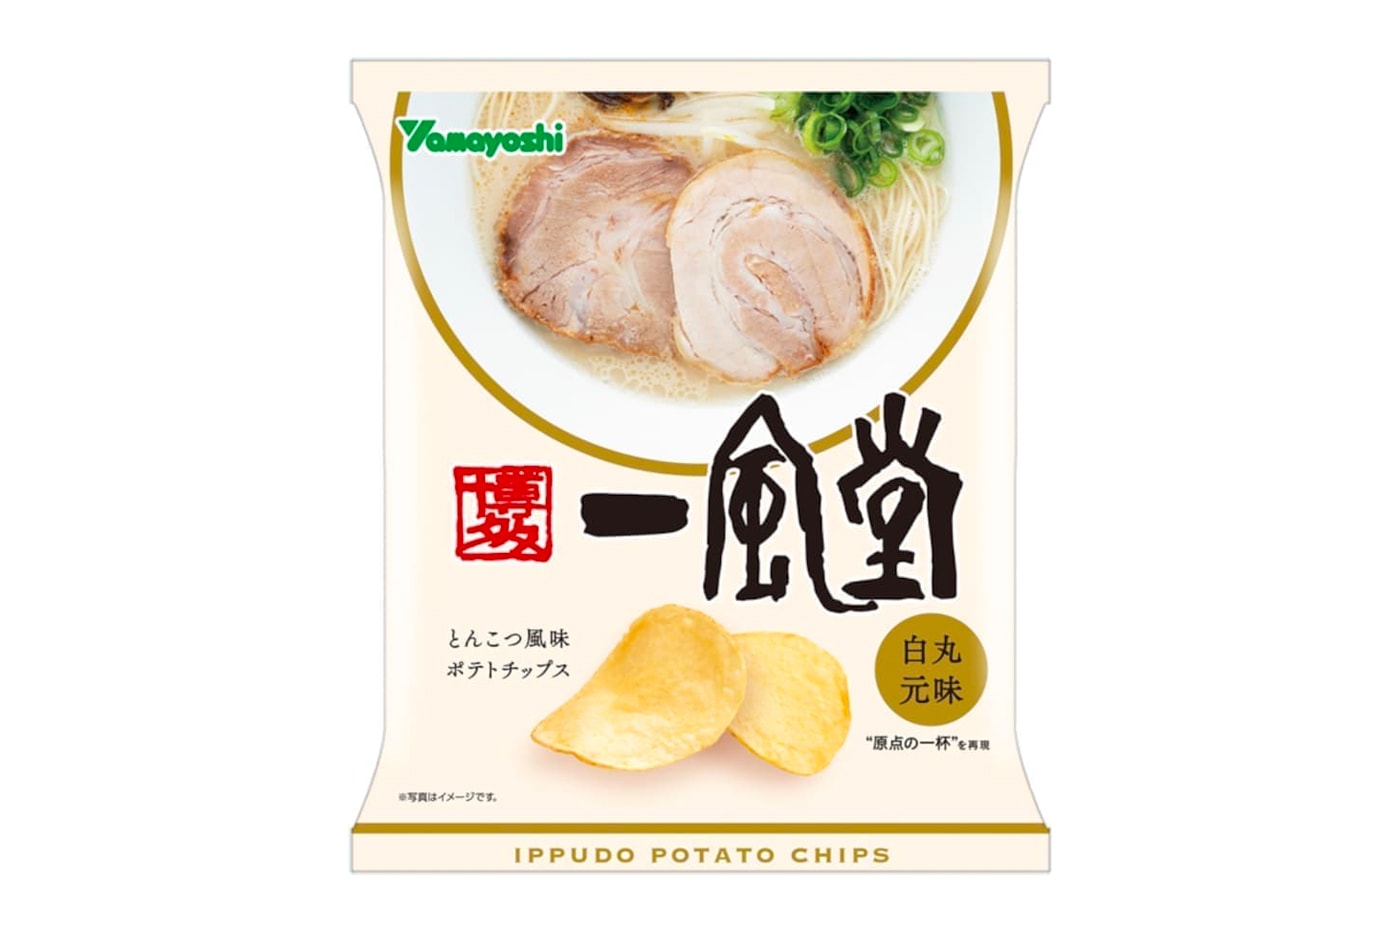 Ippudo 一風堂推出全新「豚骨拉麵口味」洋芋片